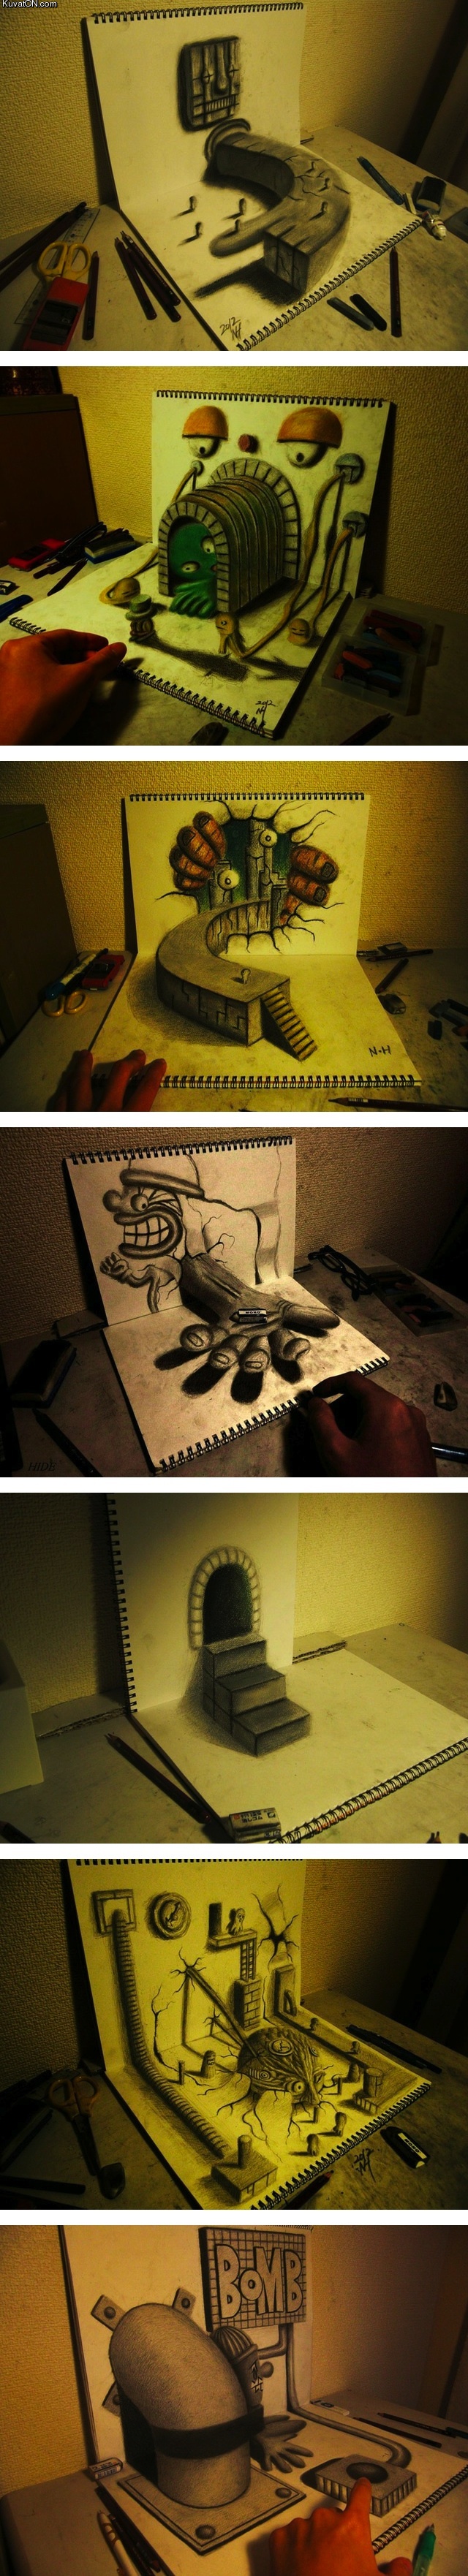 3d_illusion_sketchbook_drawings_by_nagai_hideyuki.jpg